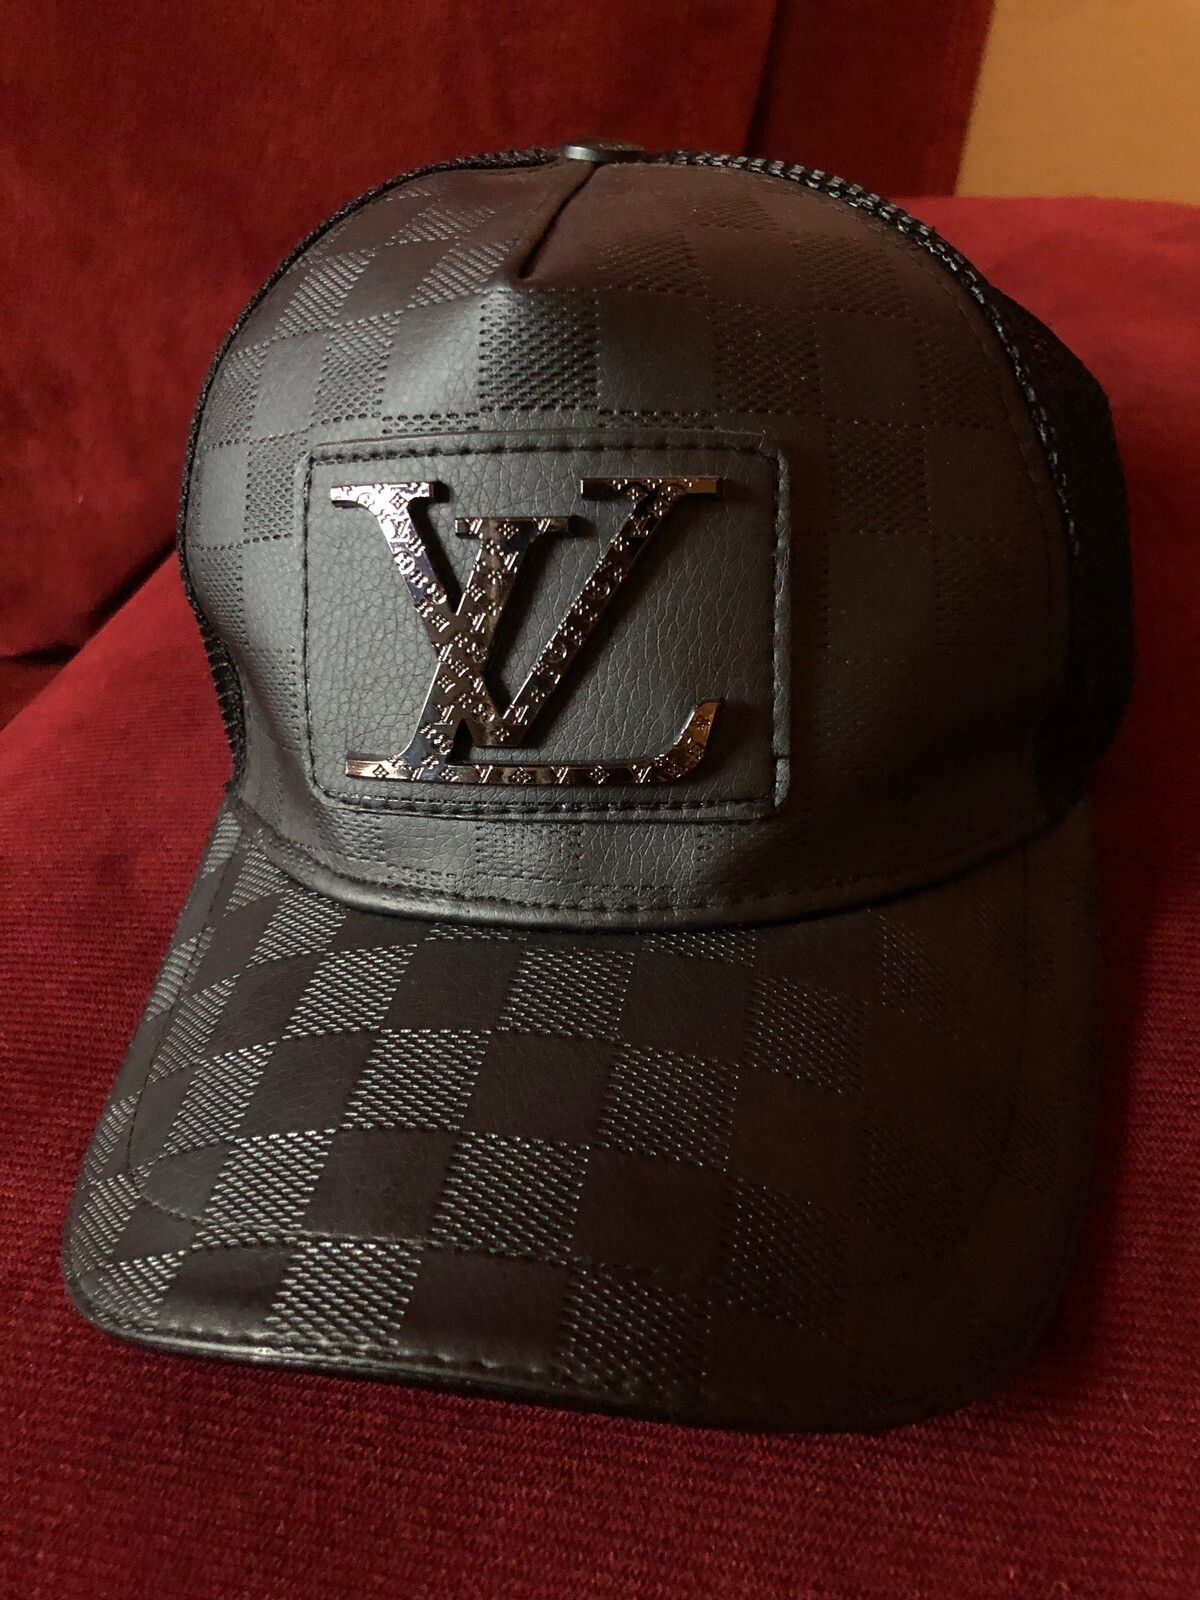 Louis Vuitton Virgil Abloh MP2481 Casquette LV Twig Cap Black Gold